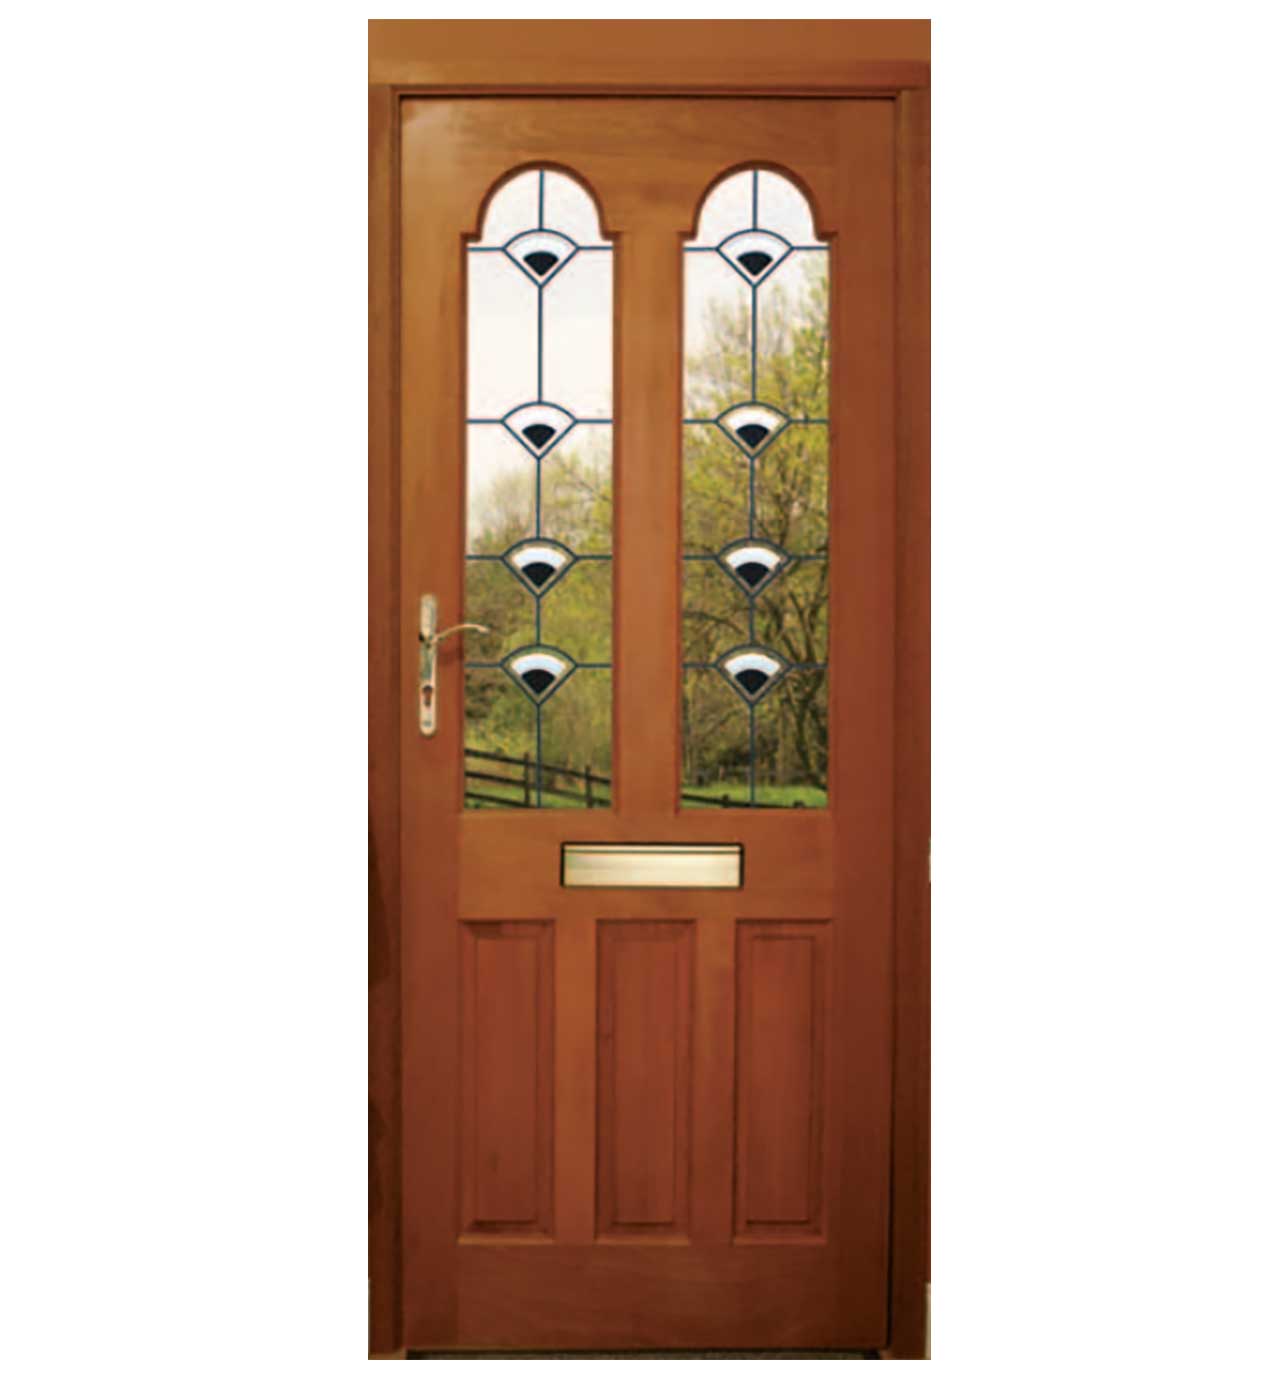 πορτα εισοδου ξυλινη με τζαμι